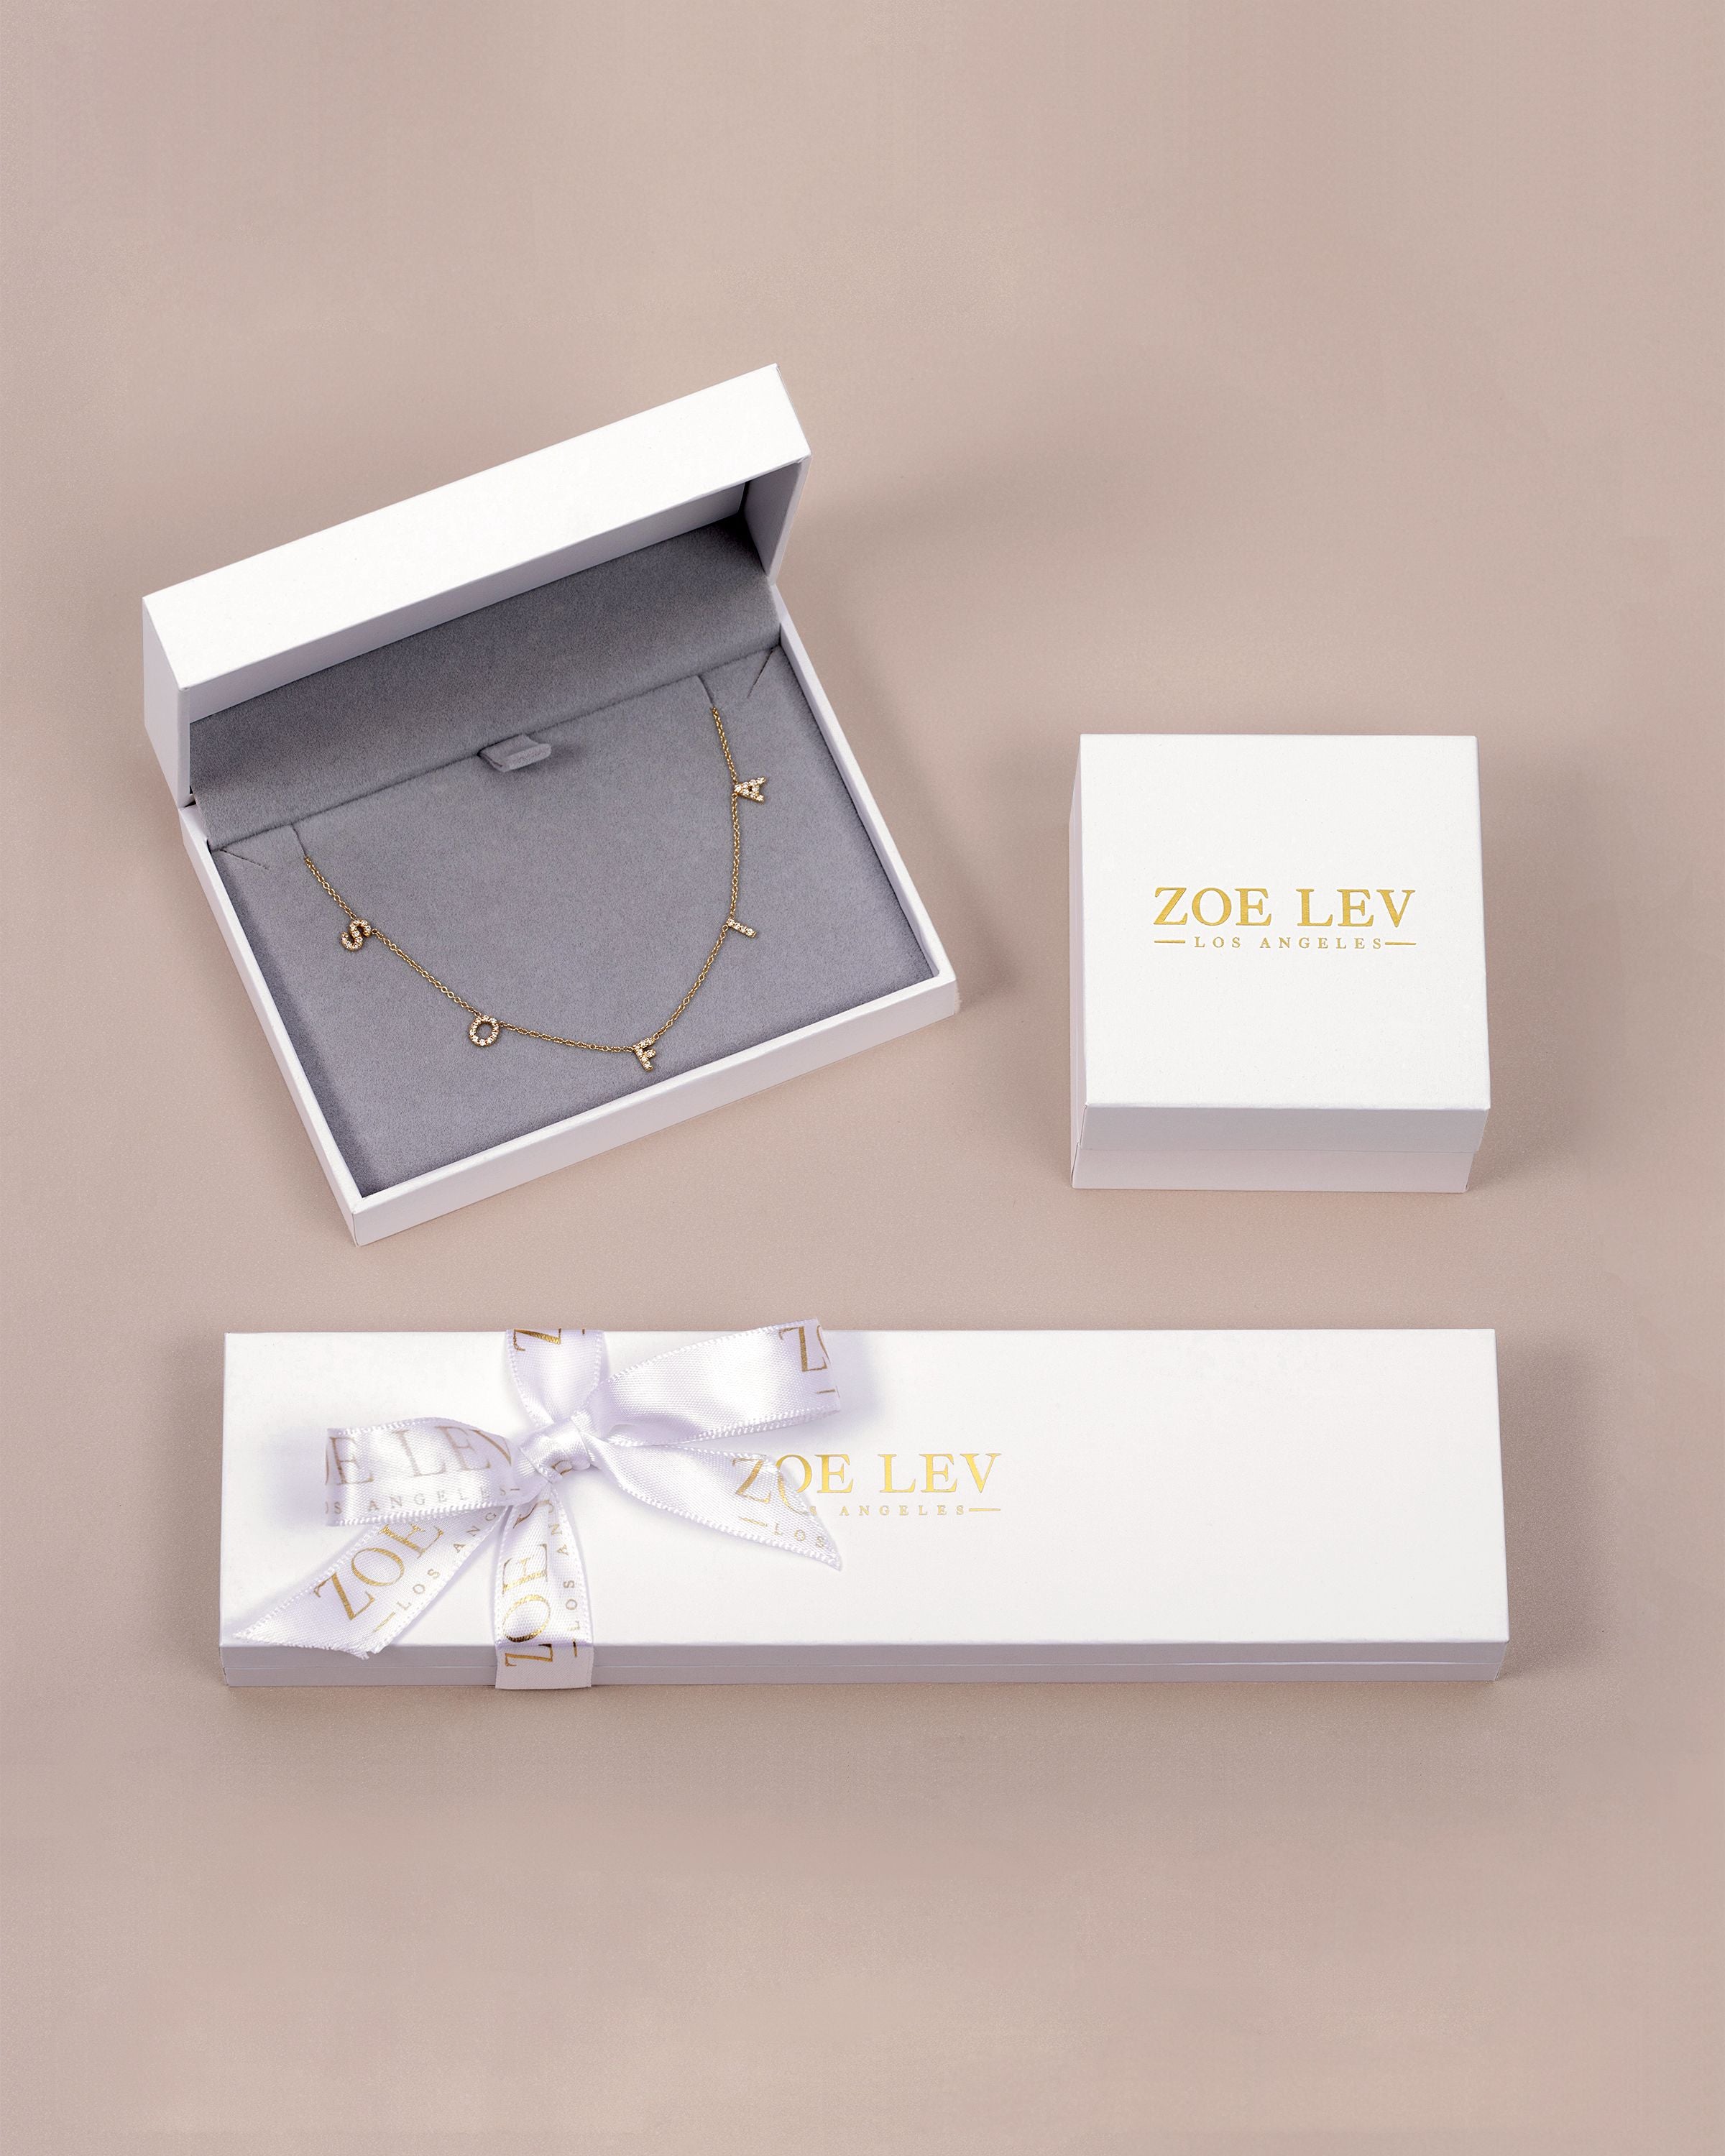 Diamond Bezel Strand Necklace – Baby Gold